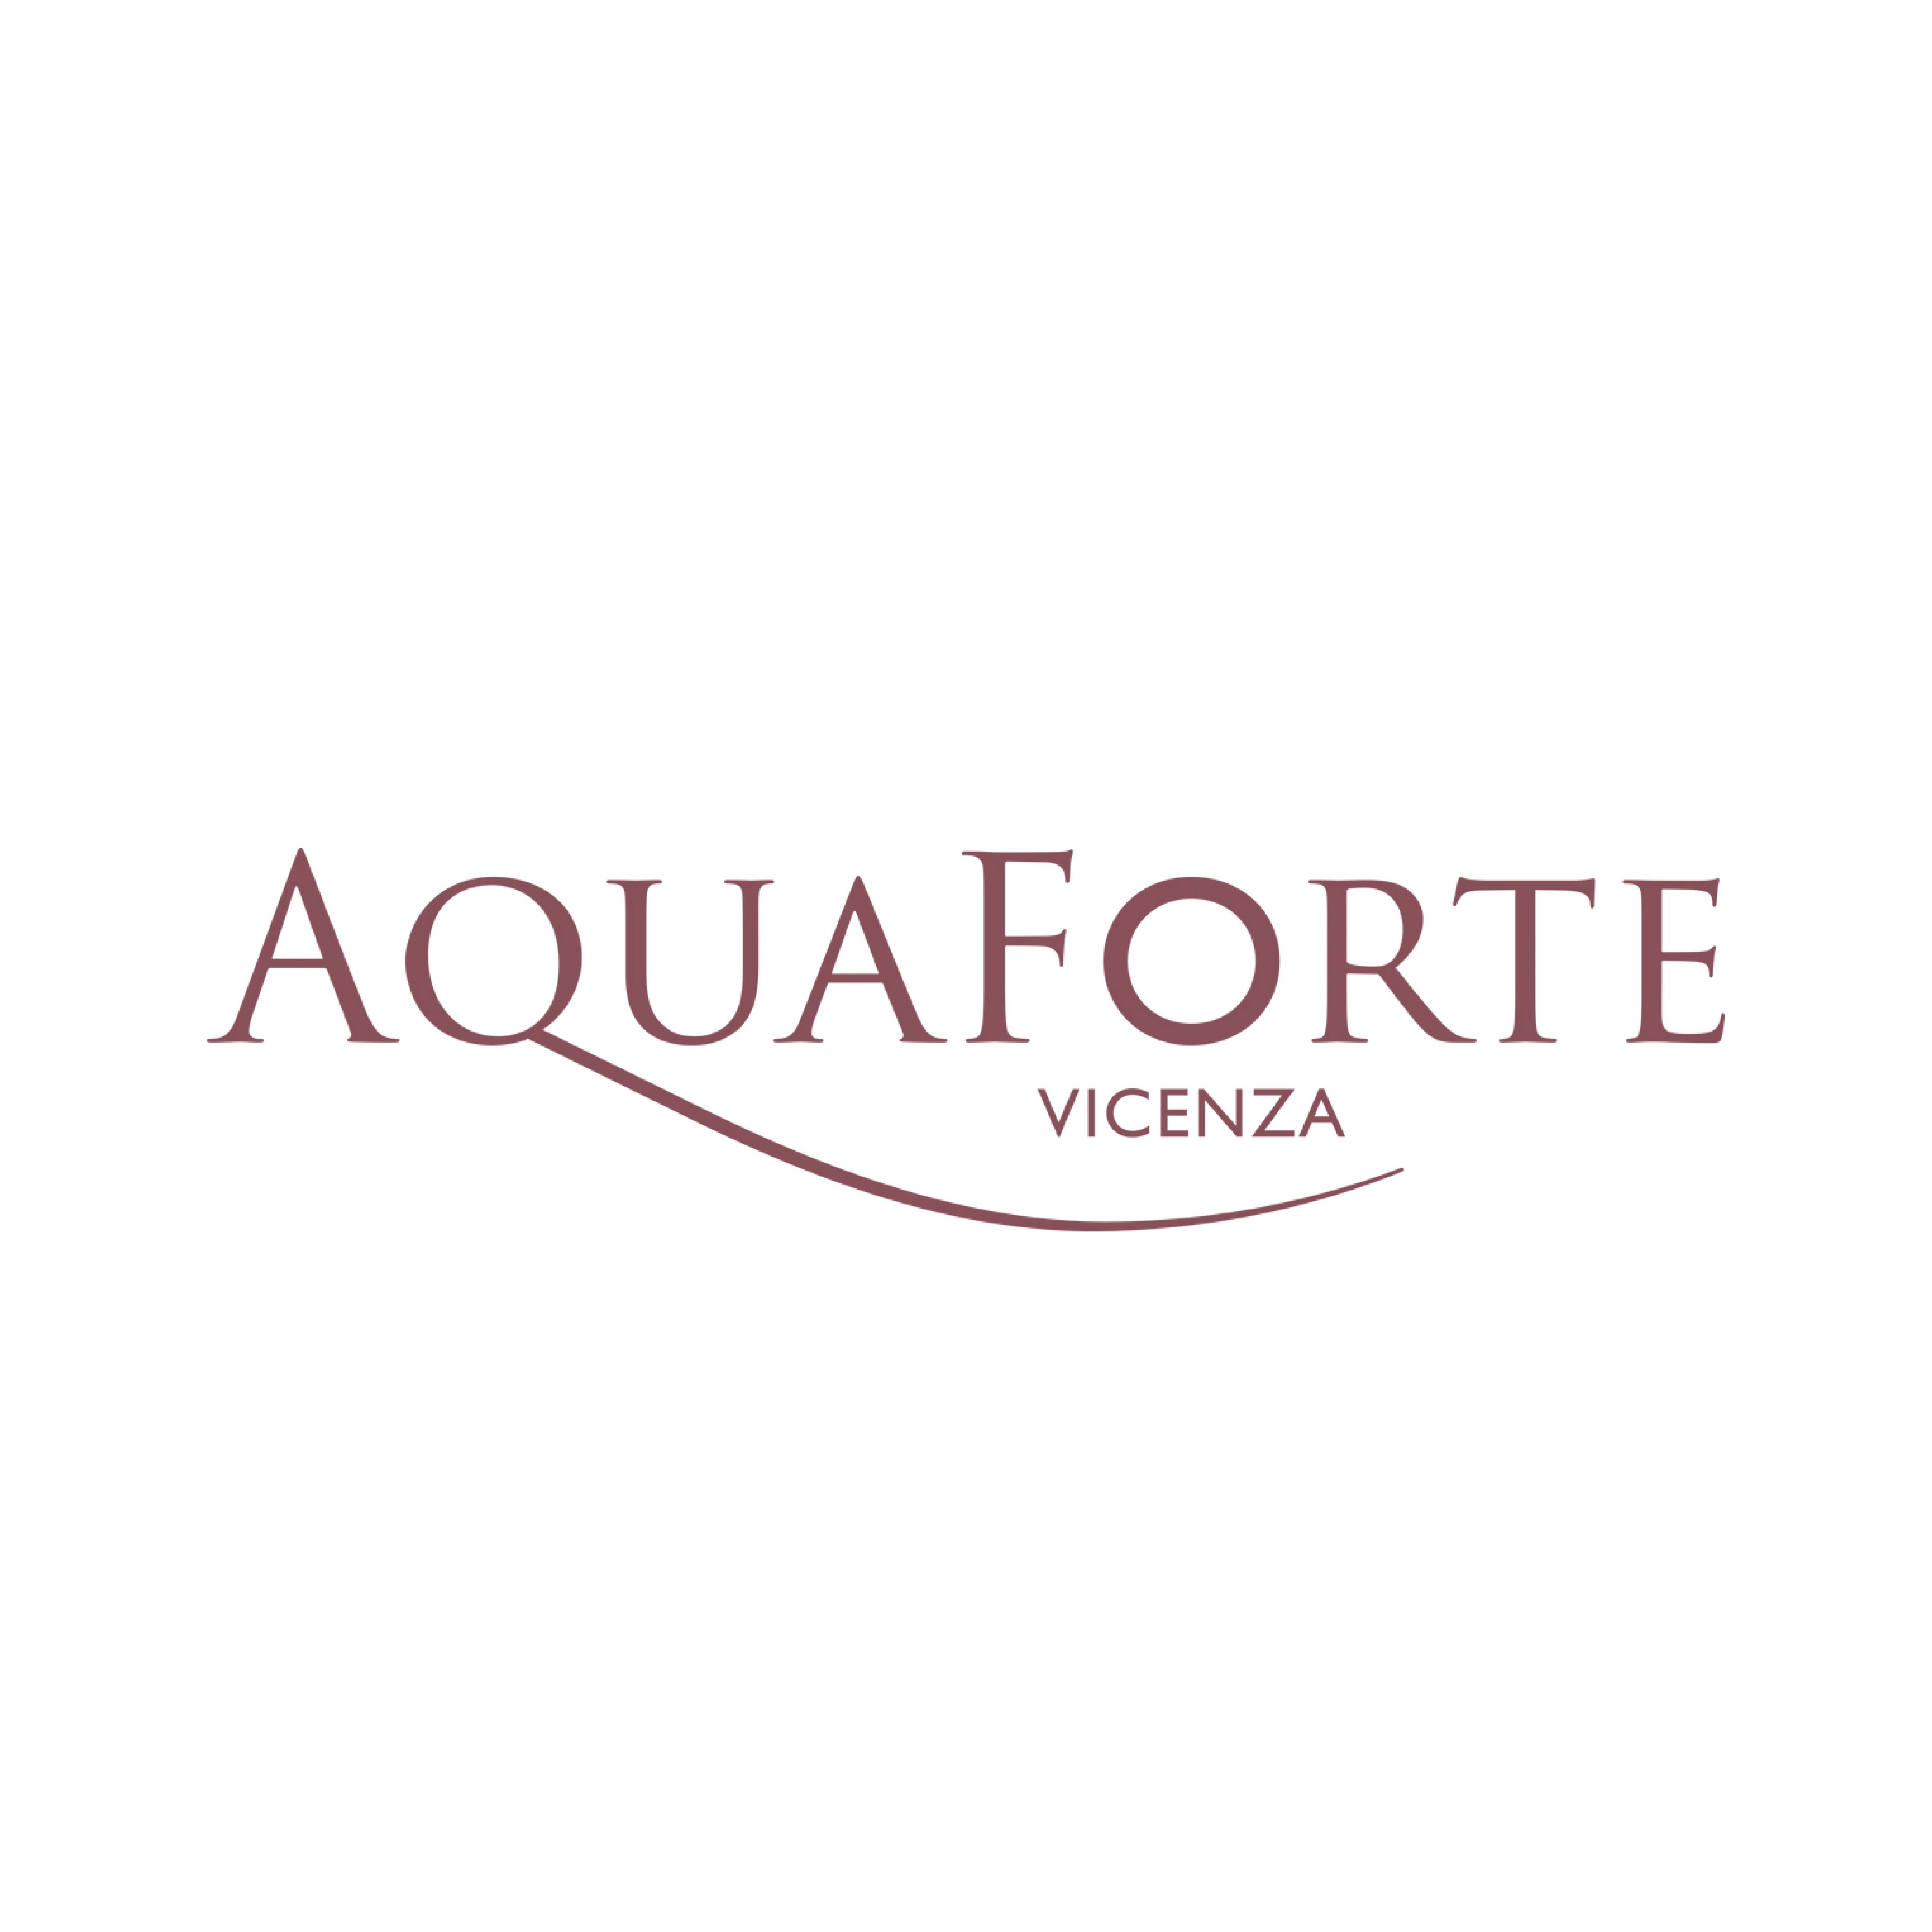 Aquaforte Vicenza